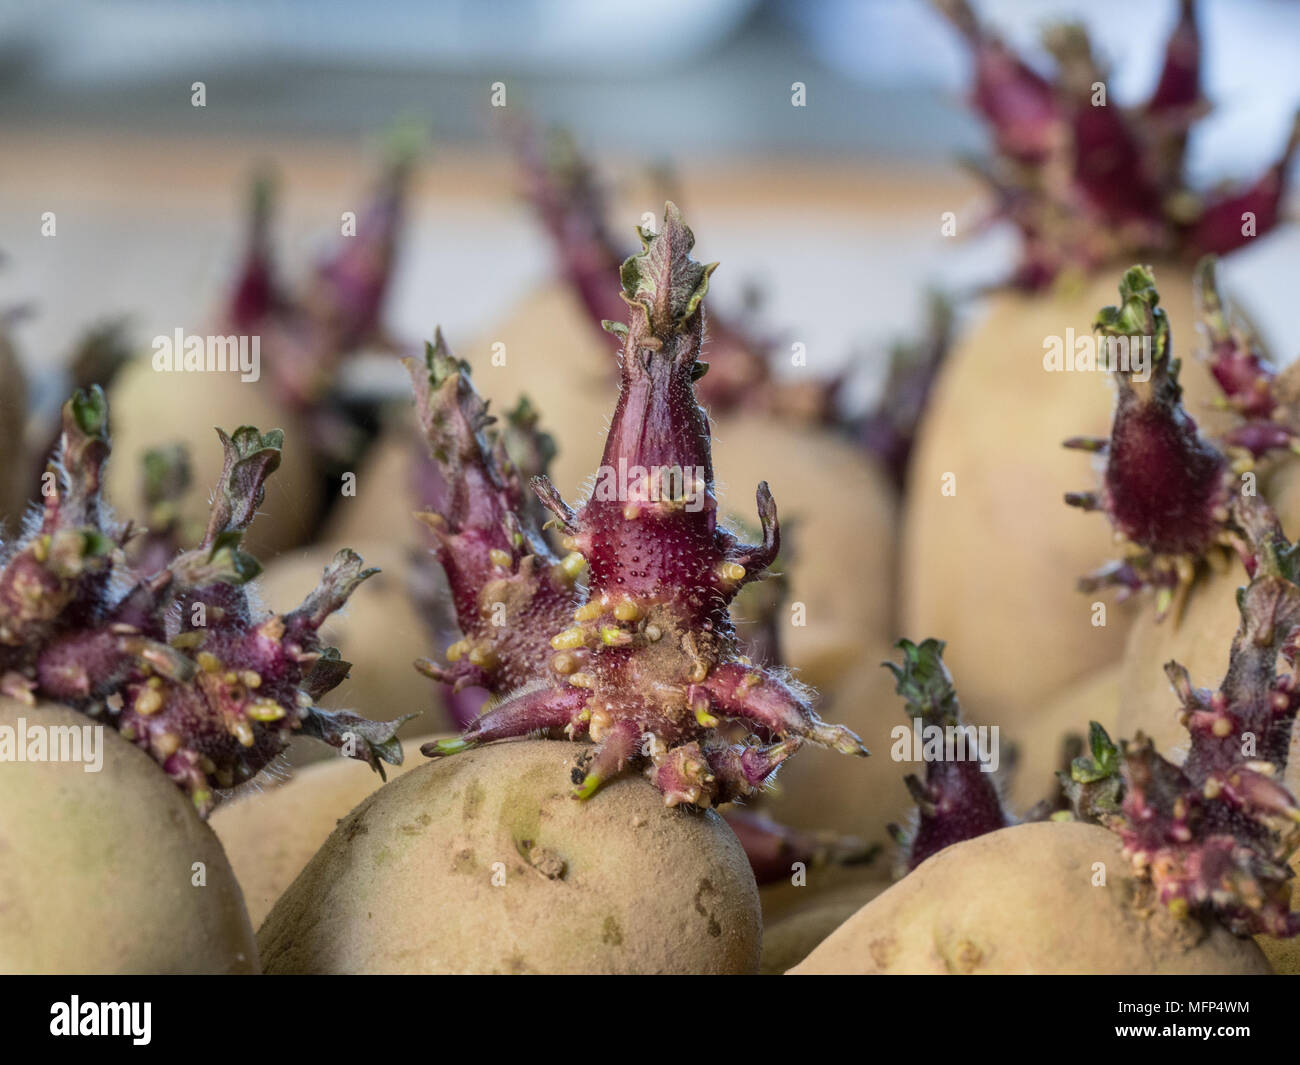 Close up of of short stocky ready to plant potato shoots Stock Photo